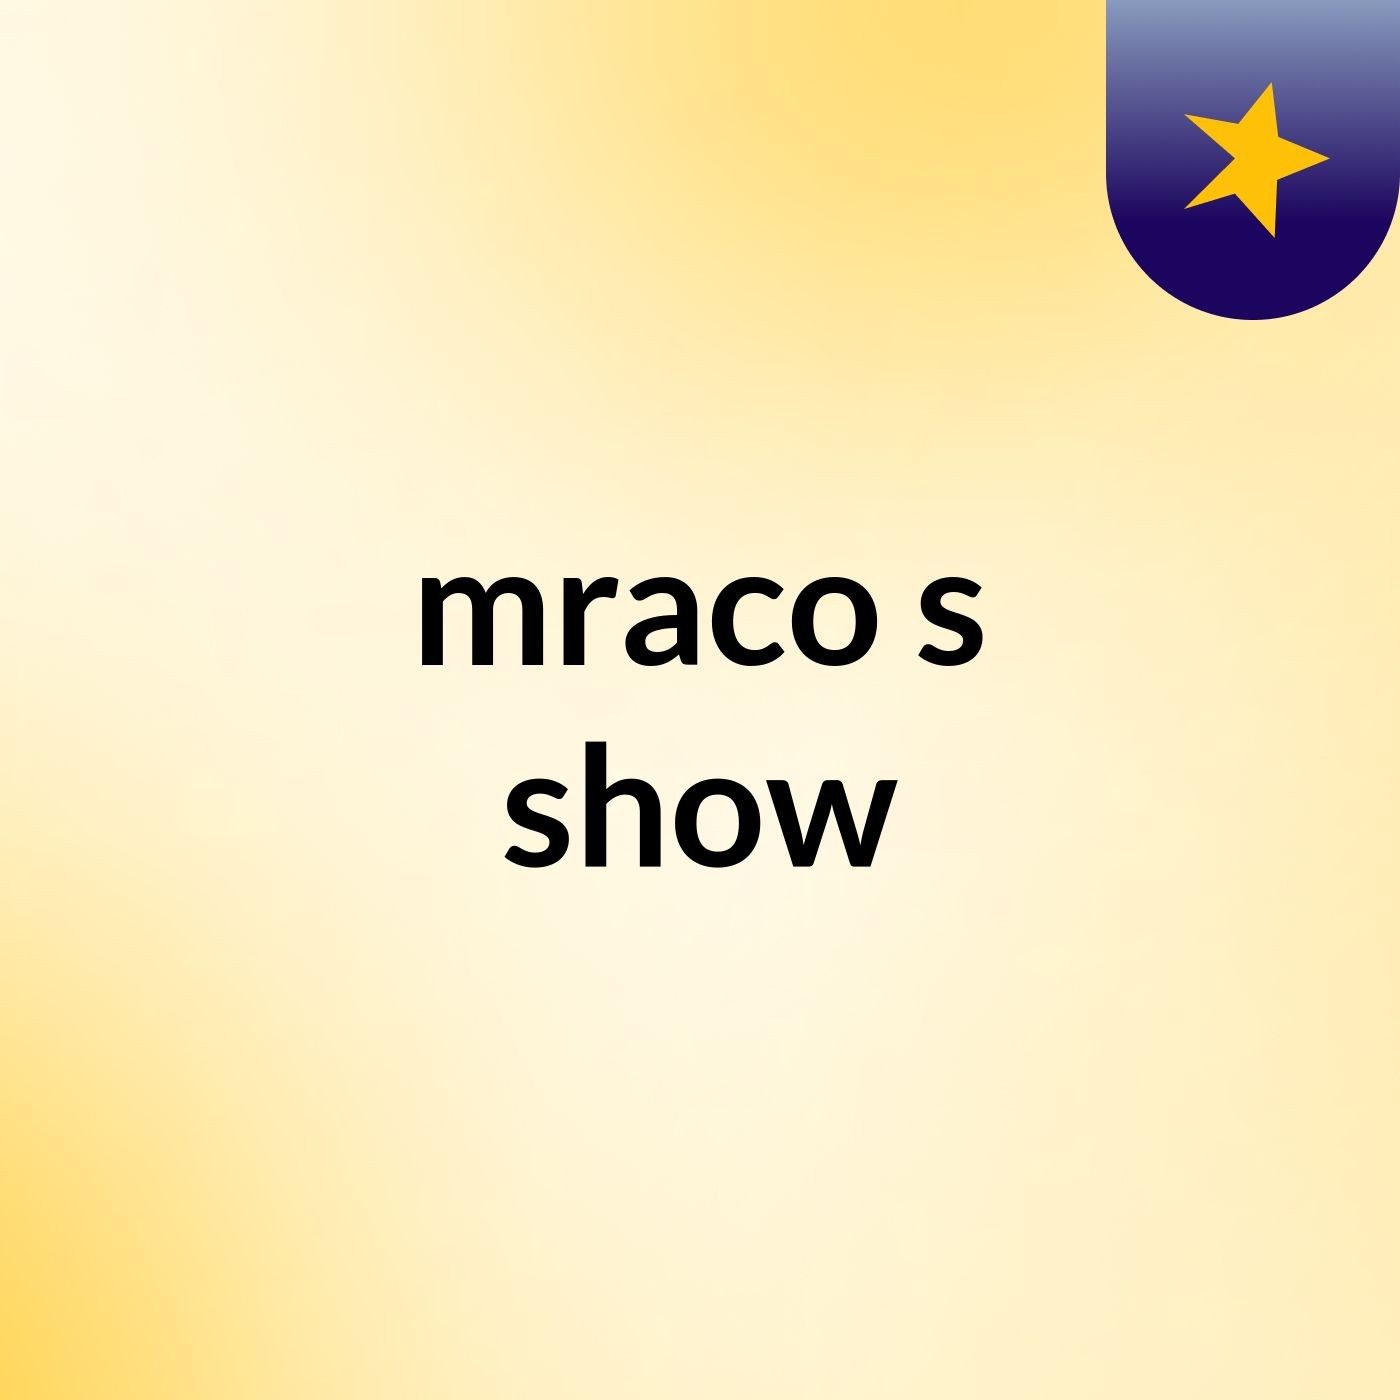 mraco's show